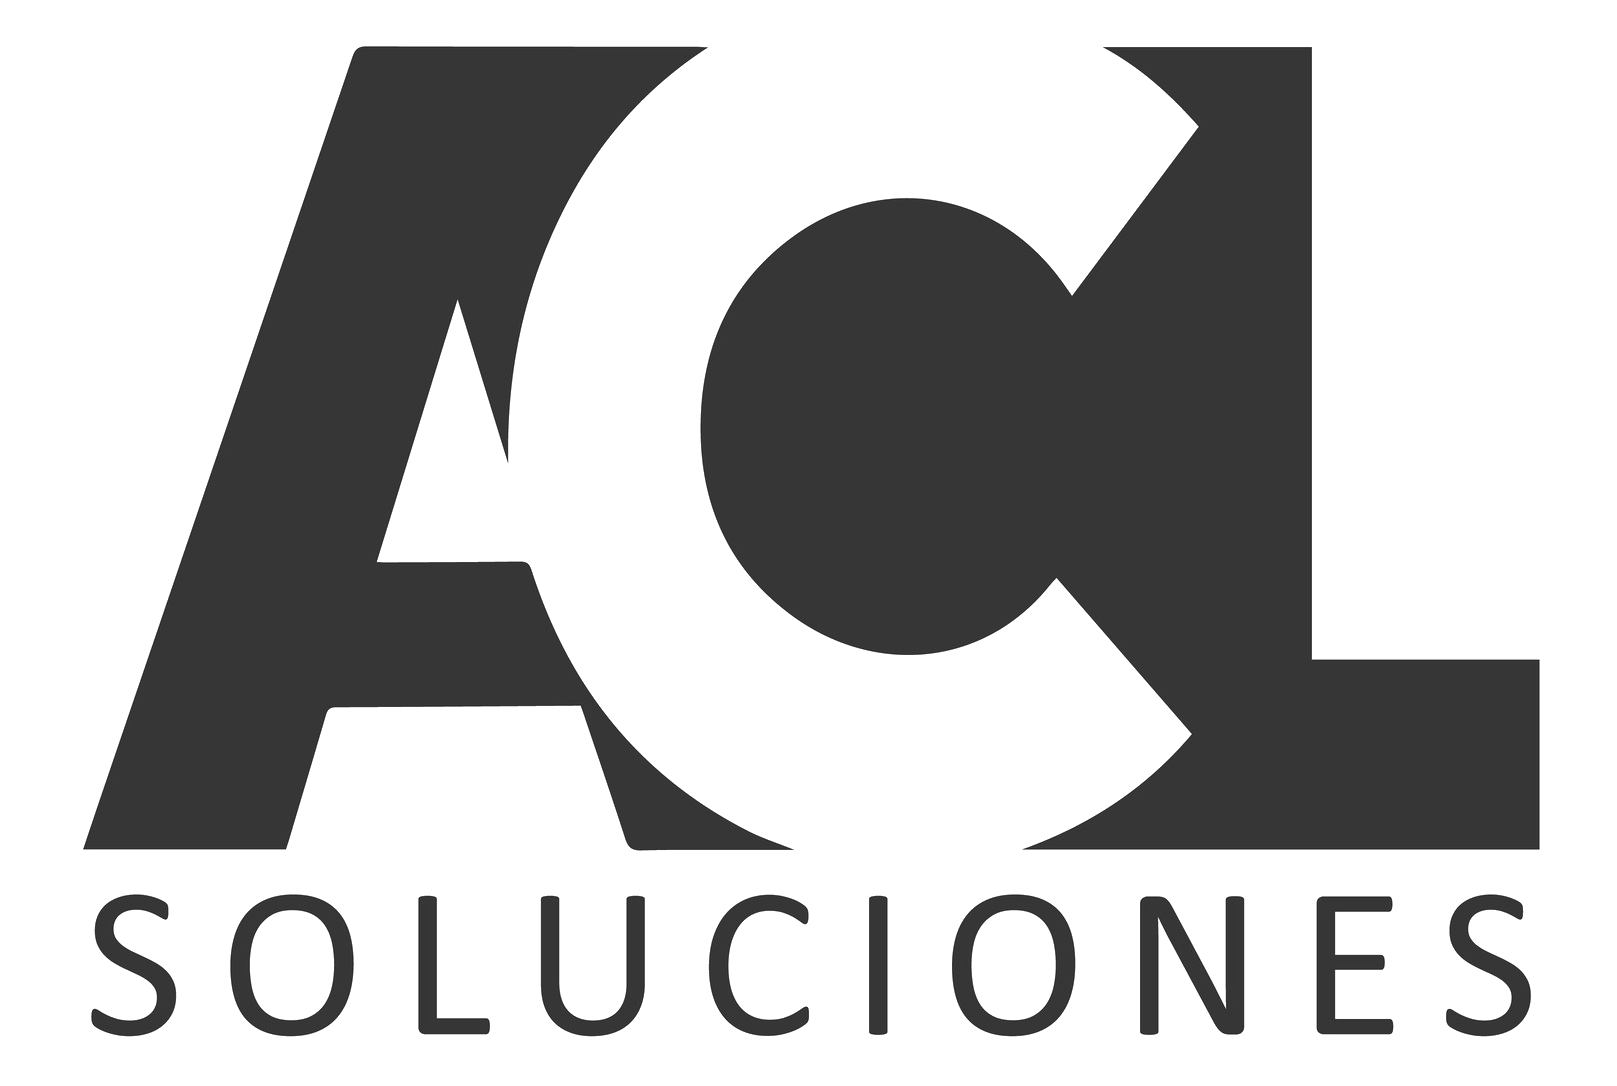 ACL Soluciones logo en negro